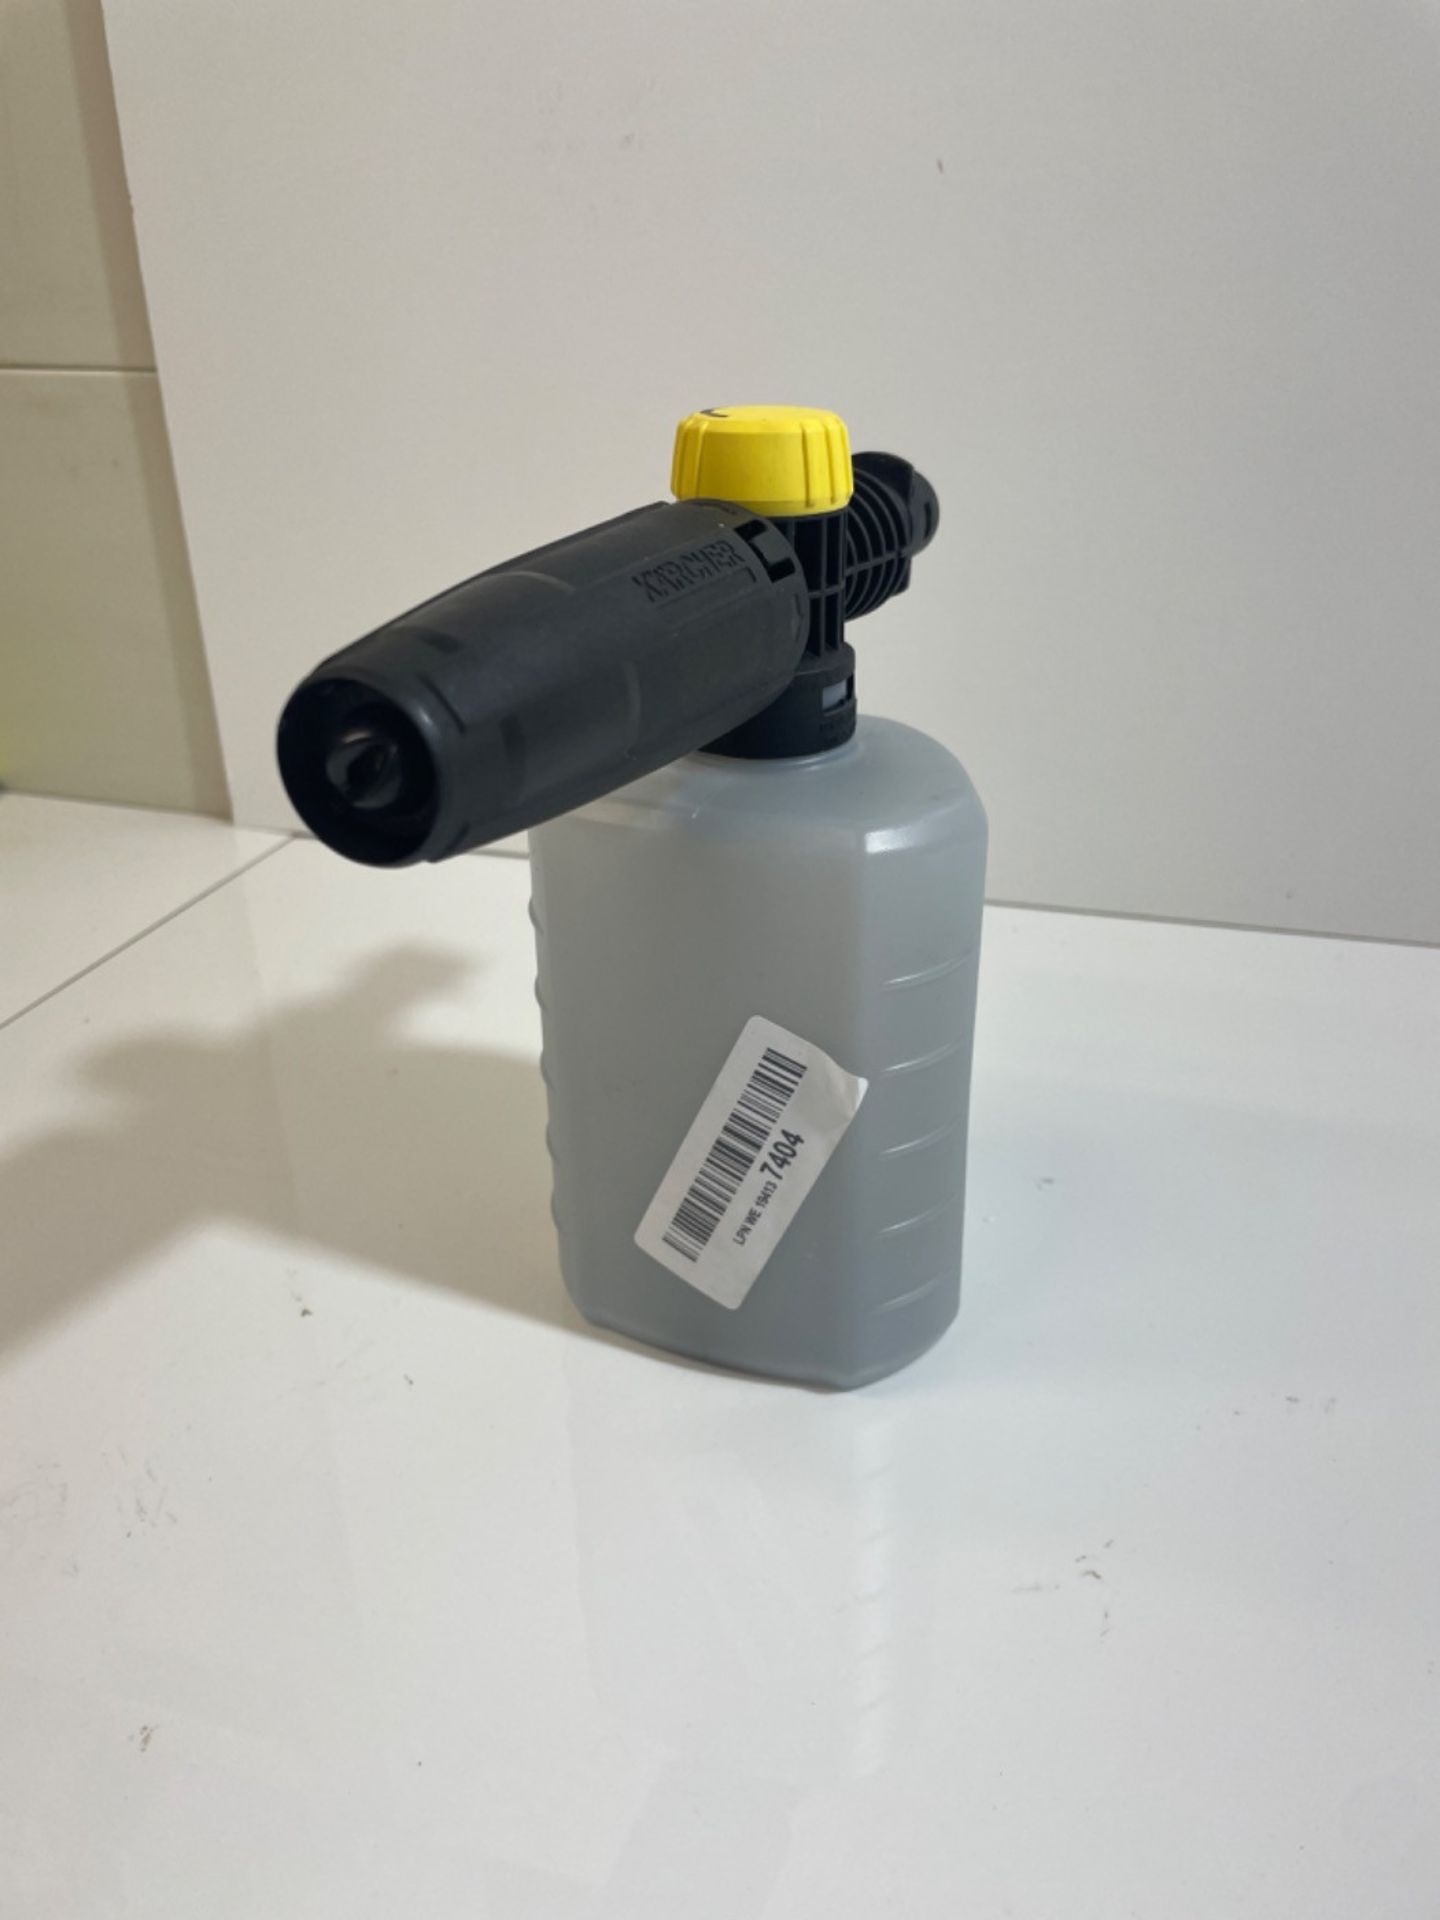 KÃ¤rcher FJ6 Foam Nozzle - Pressure Washer Accessory,Multi,0.6L - Image 3 of 3